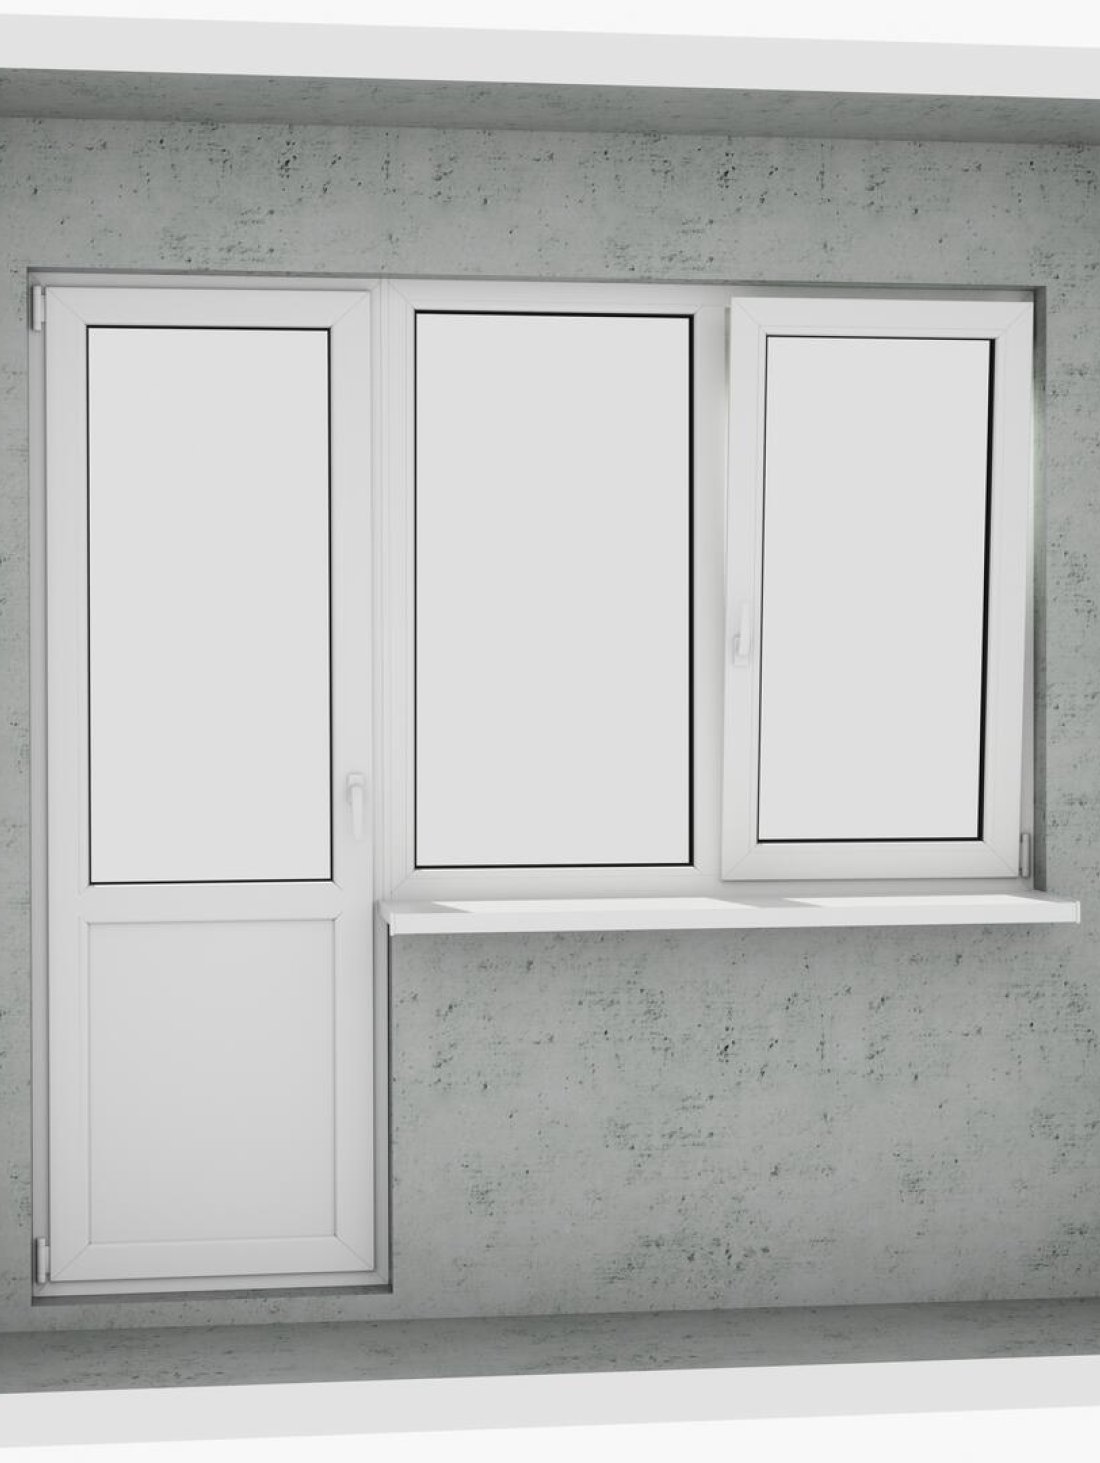 Вихід на лоджію (балкон): бюджетний класичний білий металопластиковий балконний блок (двері без режиму провітрювання, відкривається 1 половинка вікна) - Паритет UA